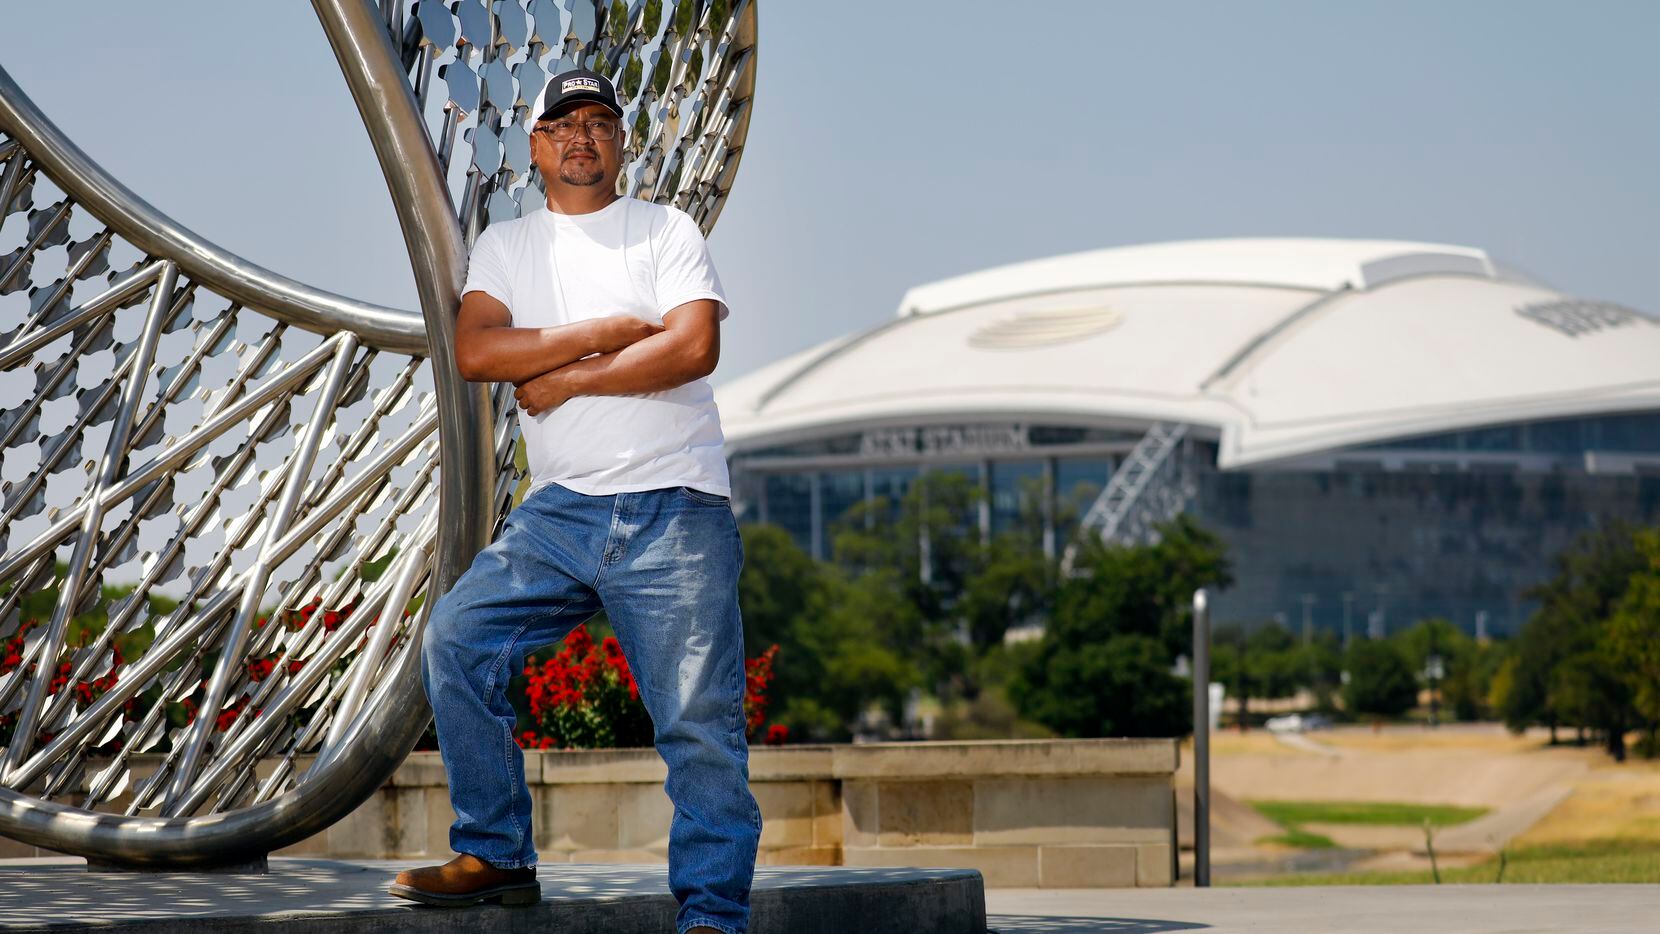 Luis Noriega de Jomex Concrete ayudó a construir el AT&T Stadium (al fondo) como obrero...